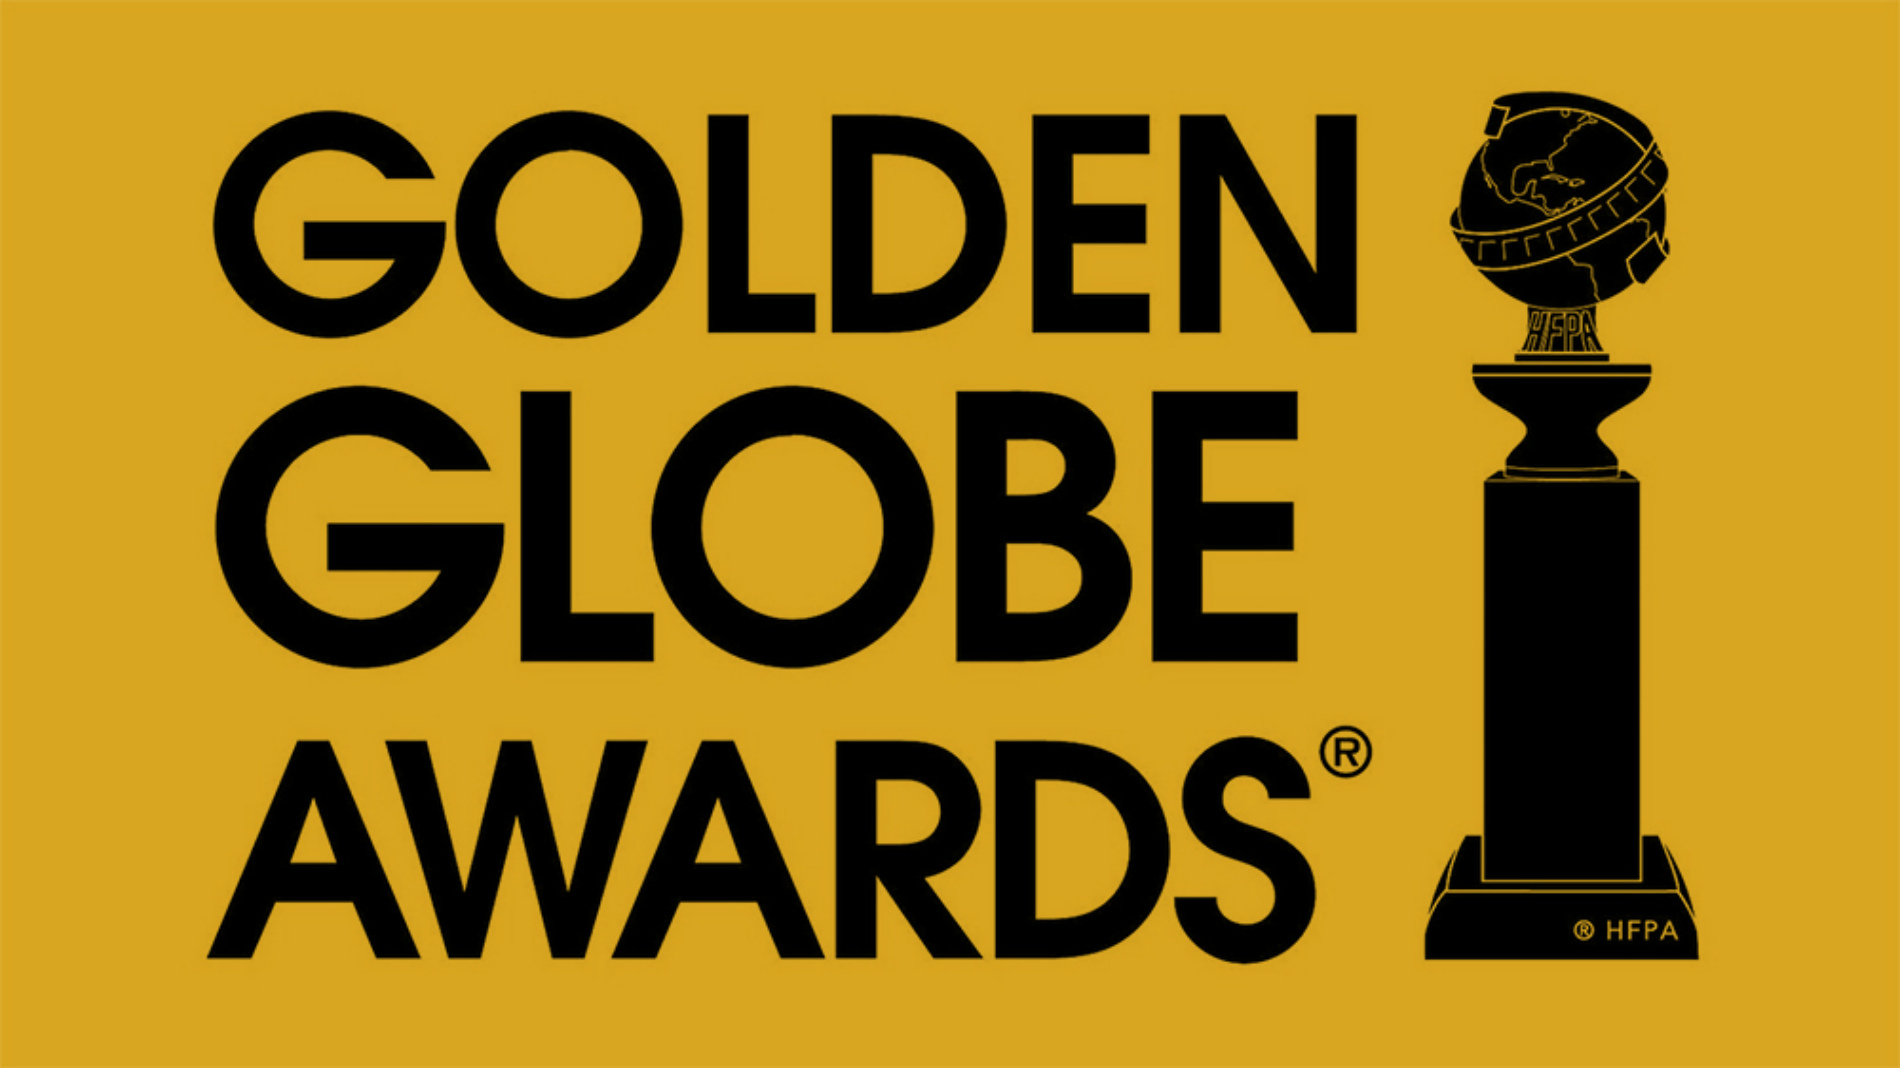 golden-globes-awards-logo-2019.jpg